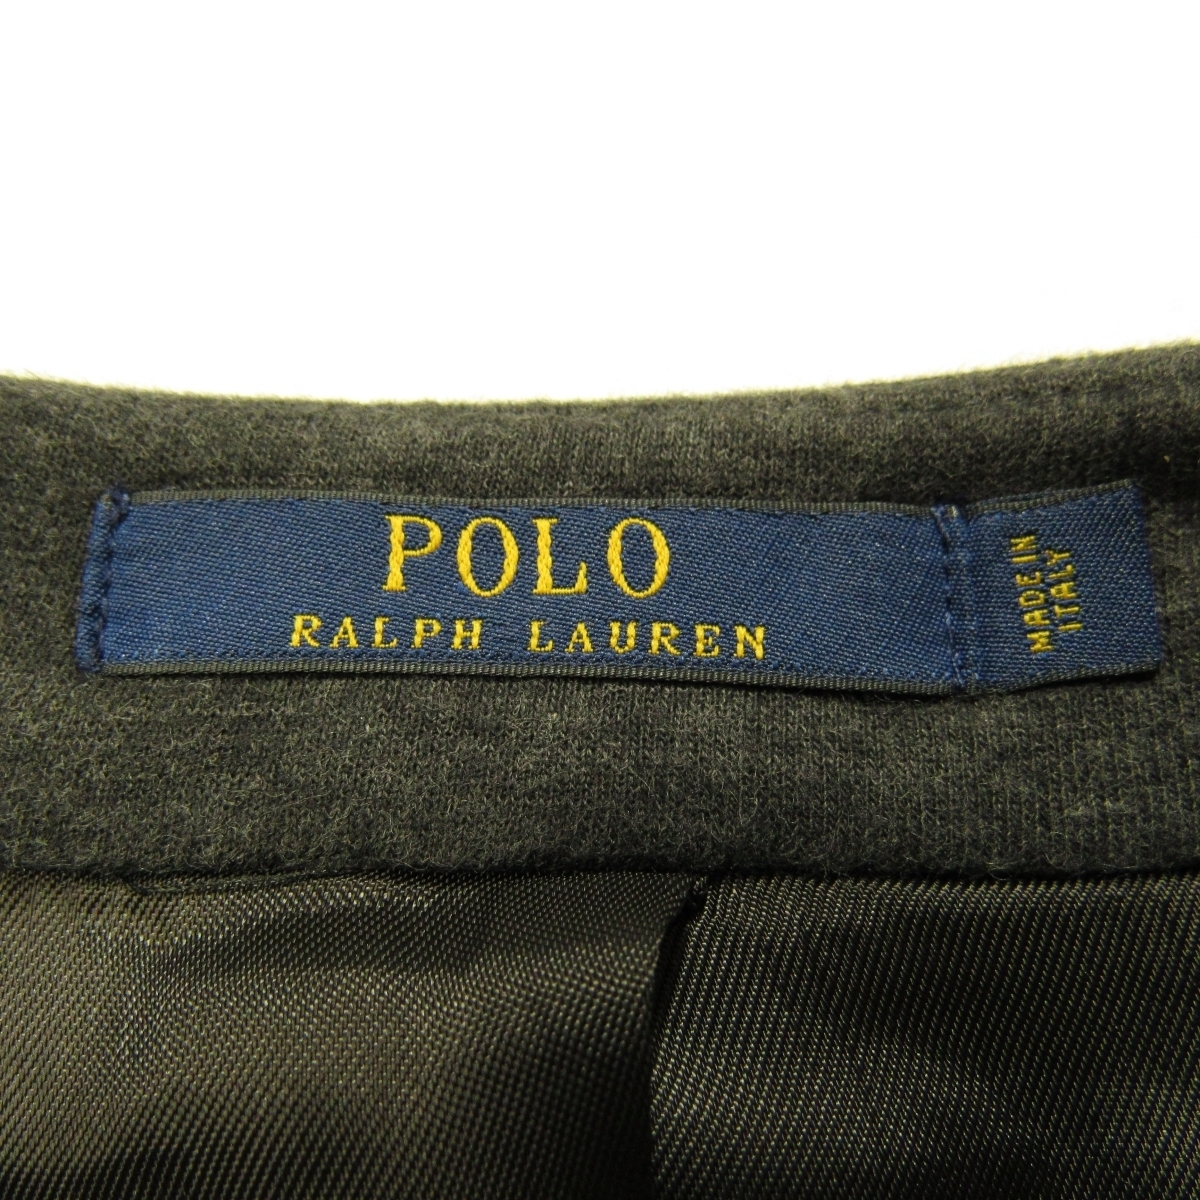 美品 イタリア製 ラルフローレン POLO RALPH LAUREN メンズ ジャージー テーラード ジャケット size38R 170/92A スリーシーズン チャコール_画像4